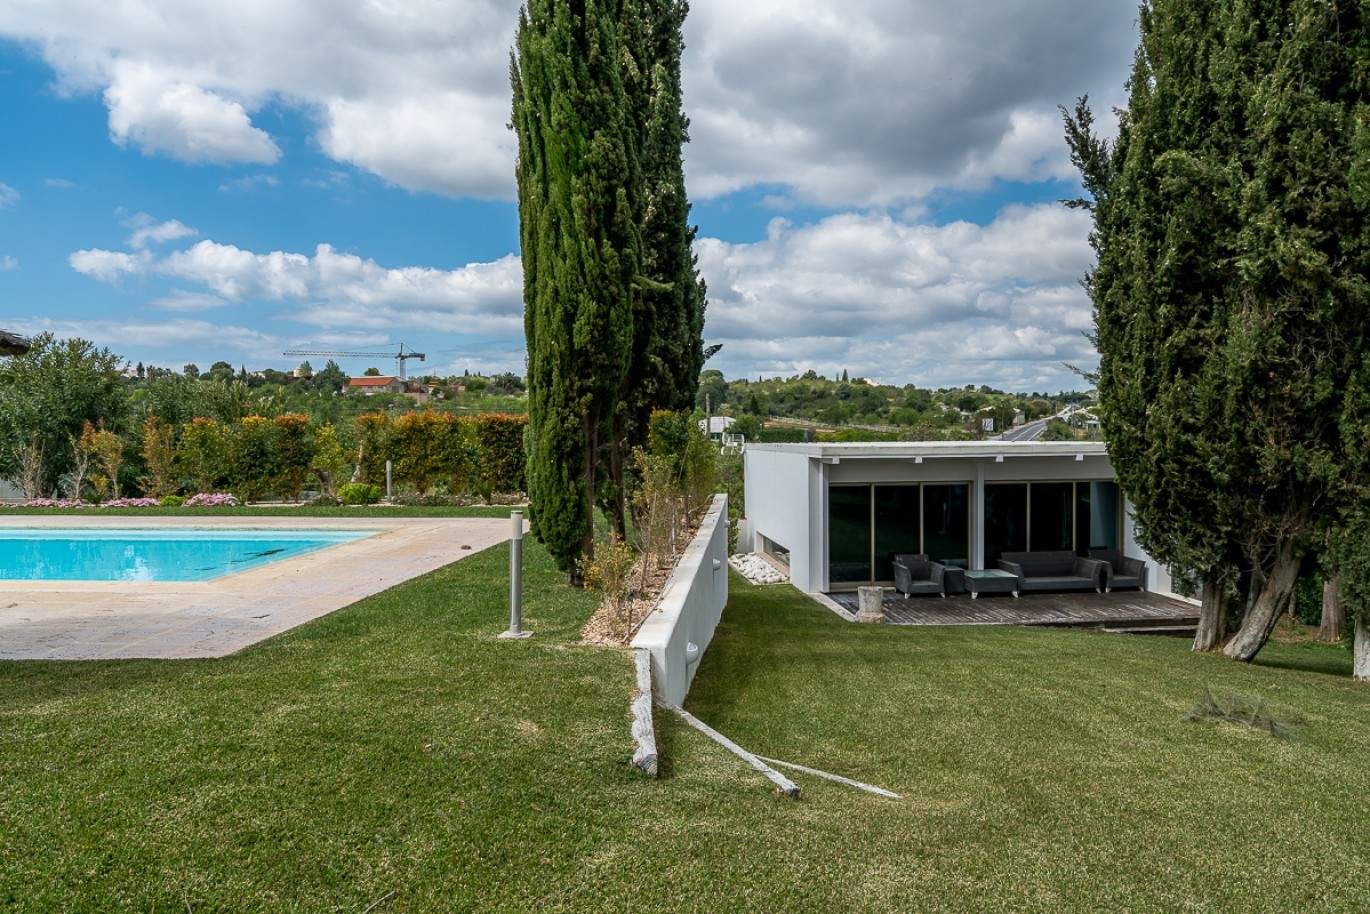 Venda de moradia de alto padrão com piscina, Silves, Algarve, Portugal_77350